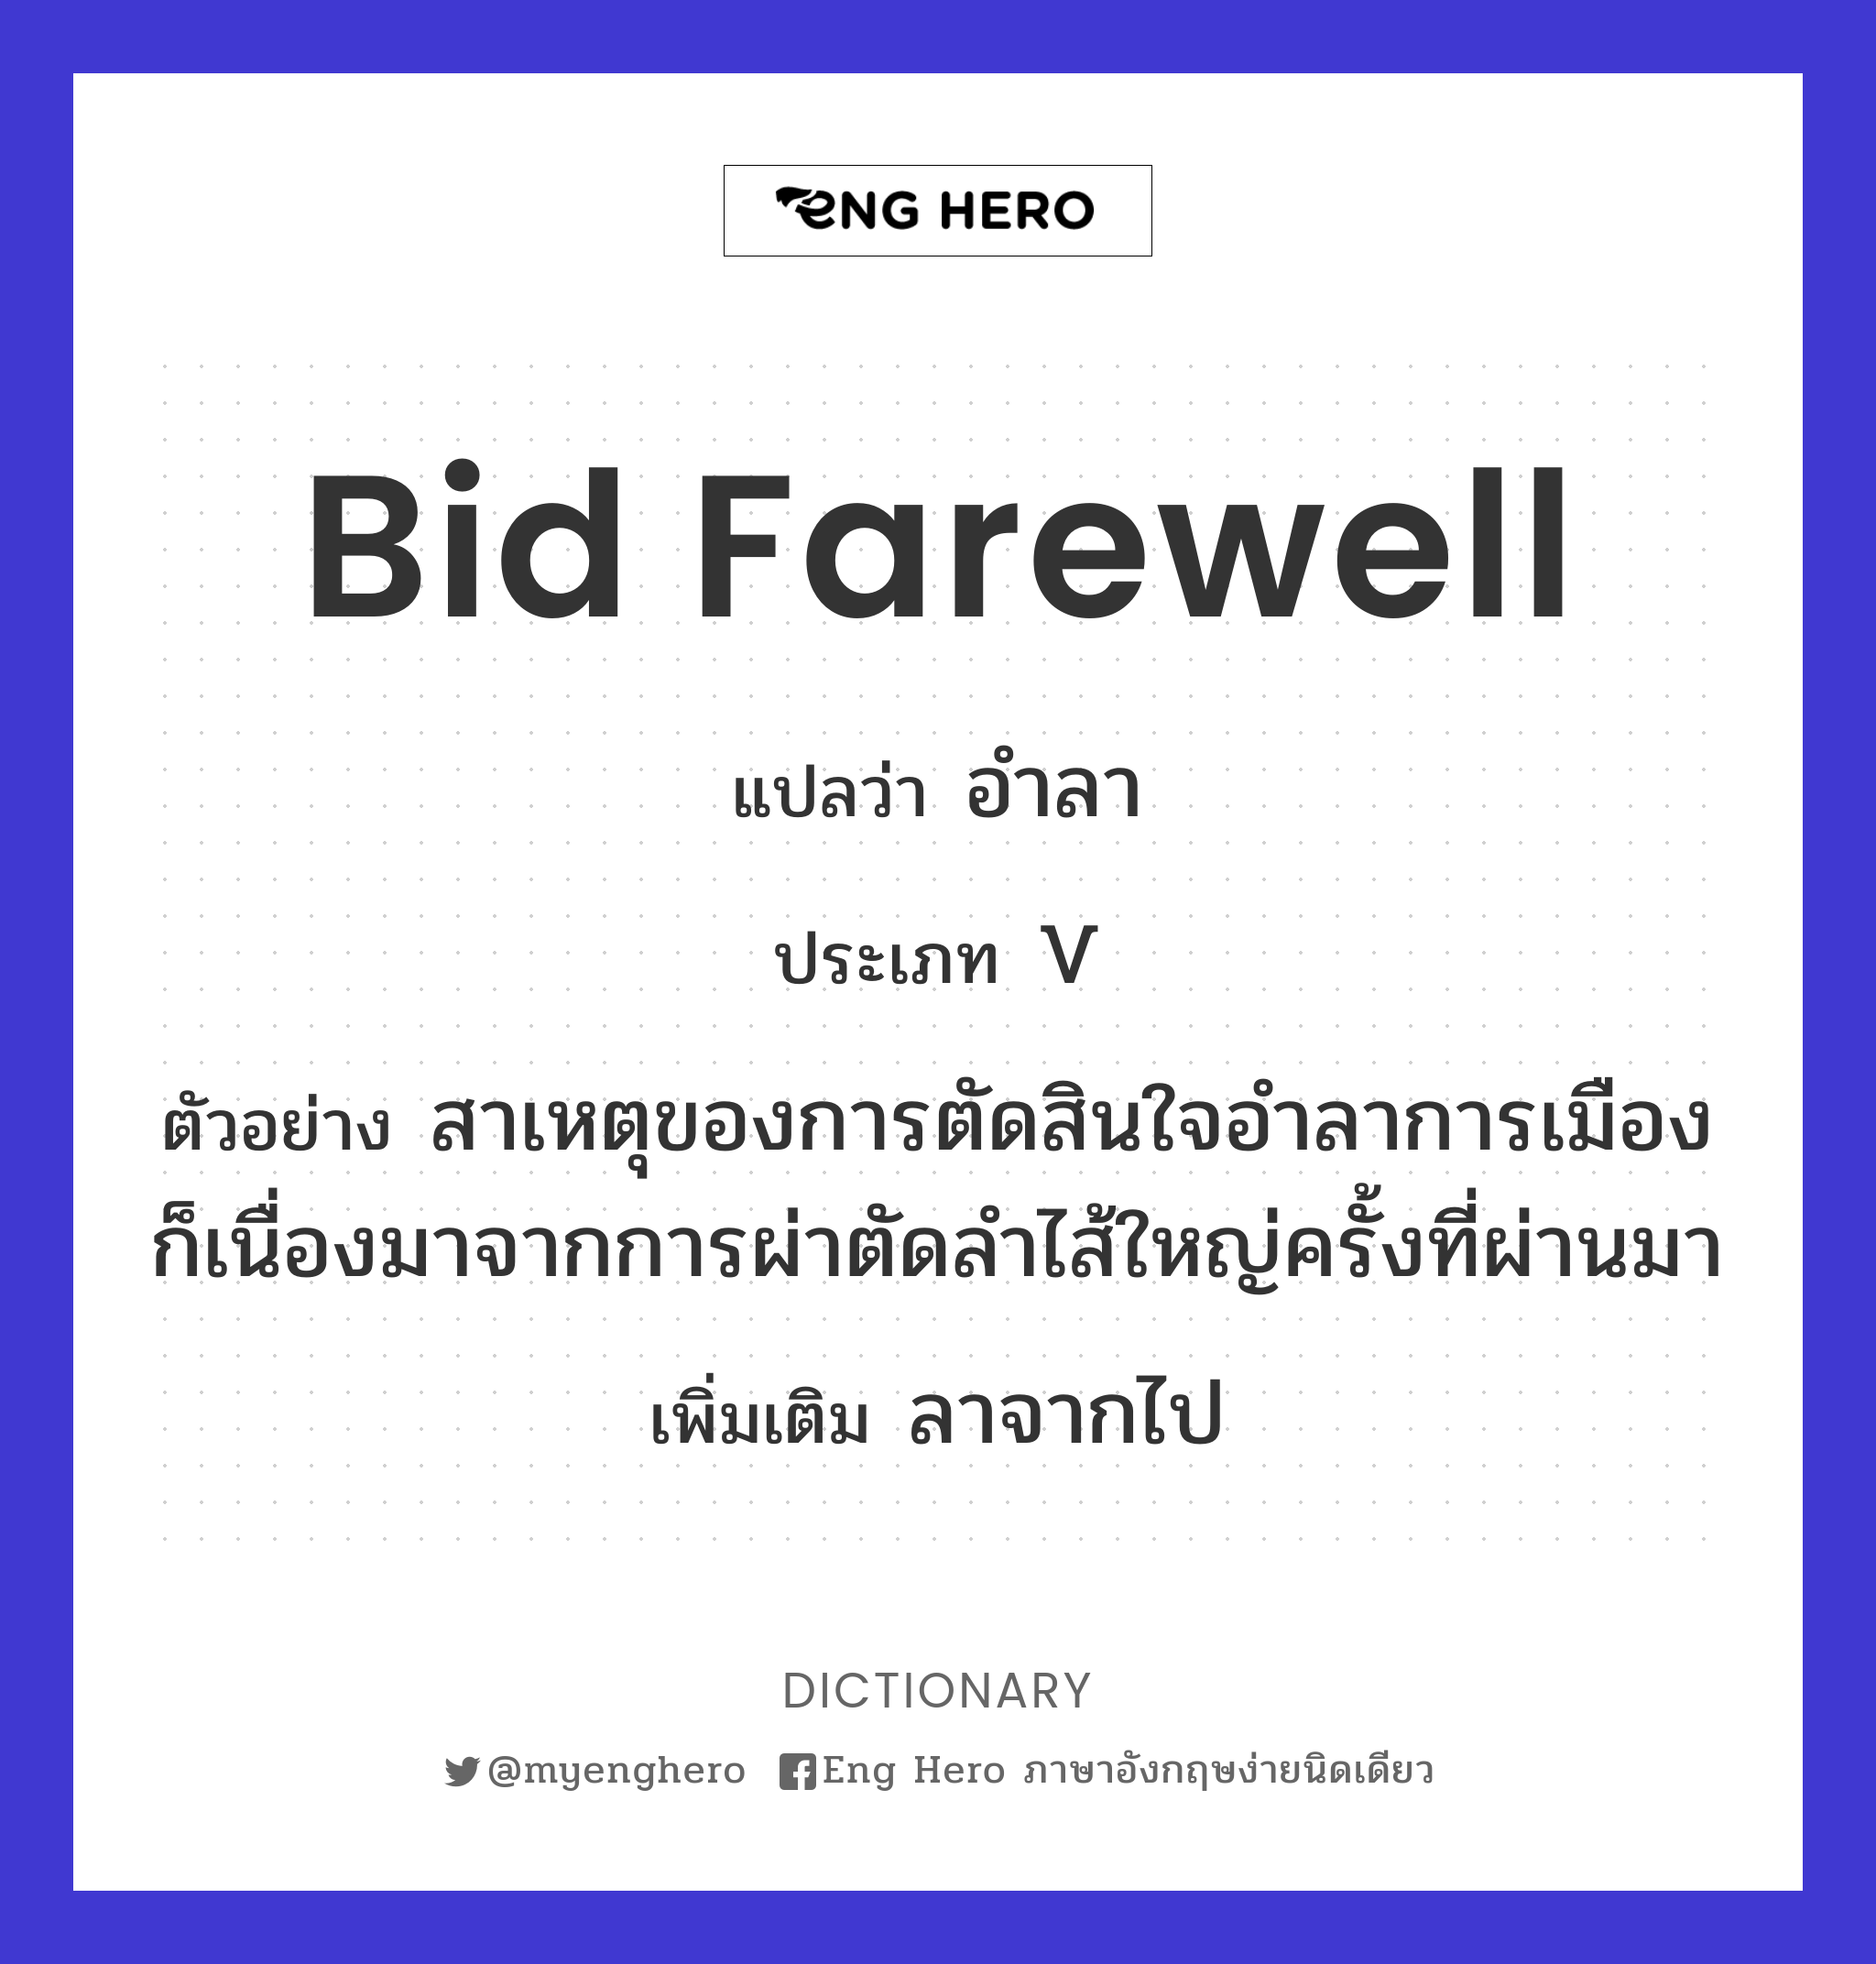 bid farewell